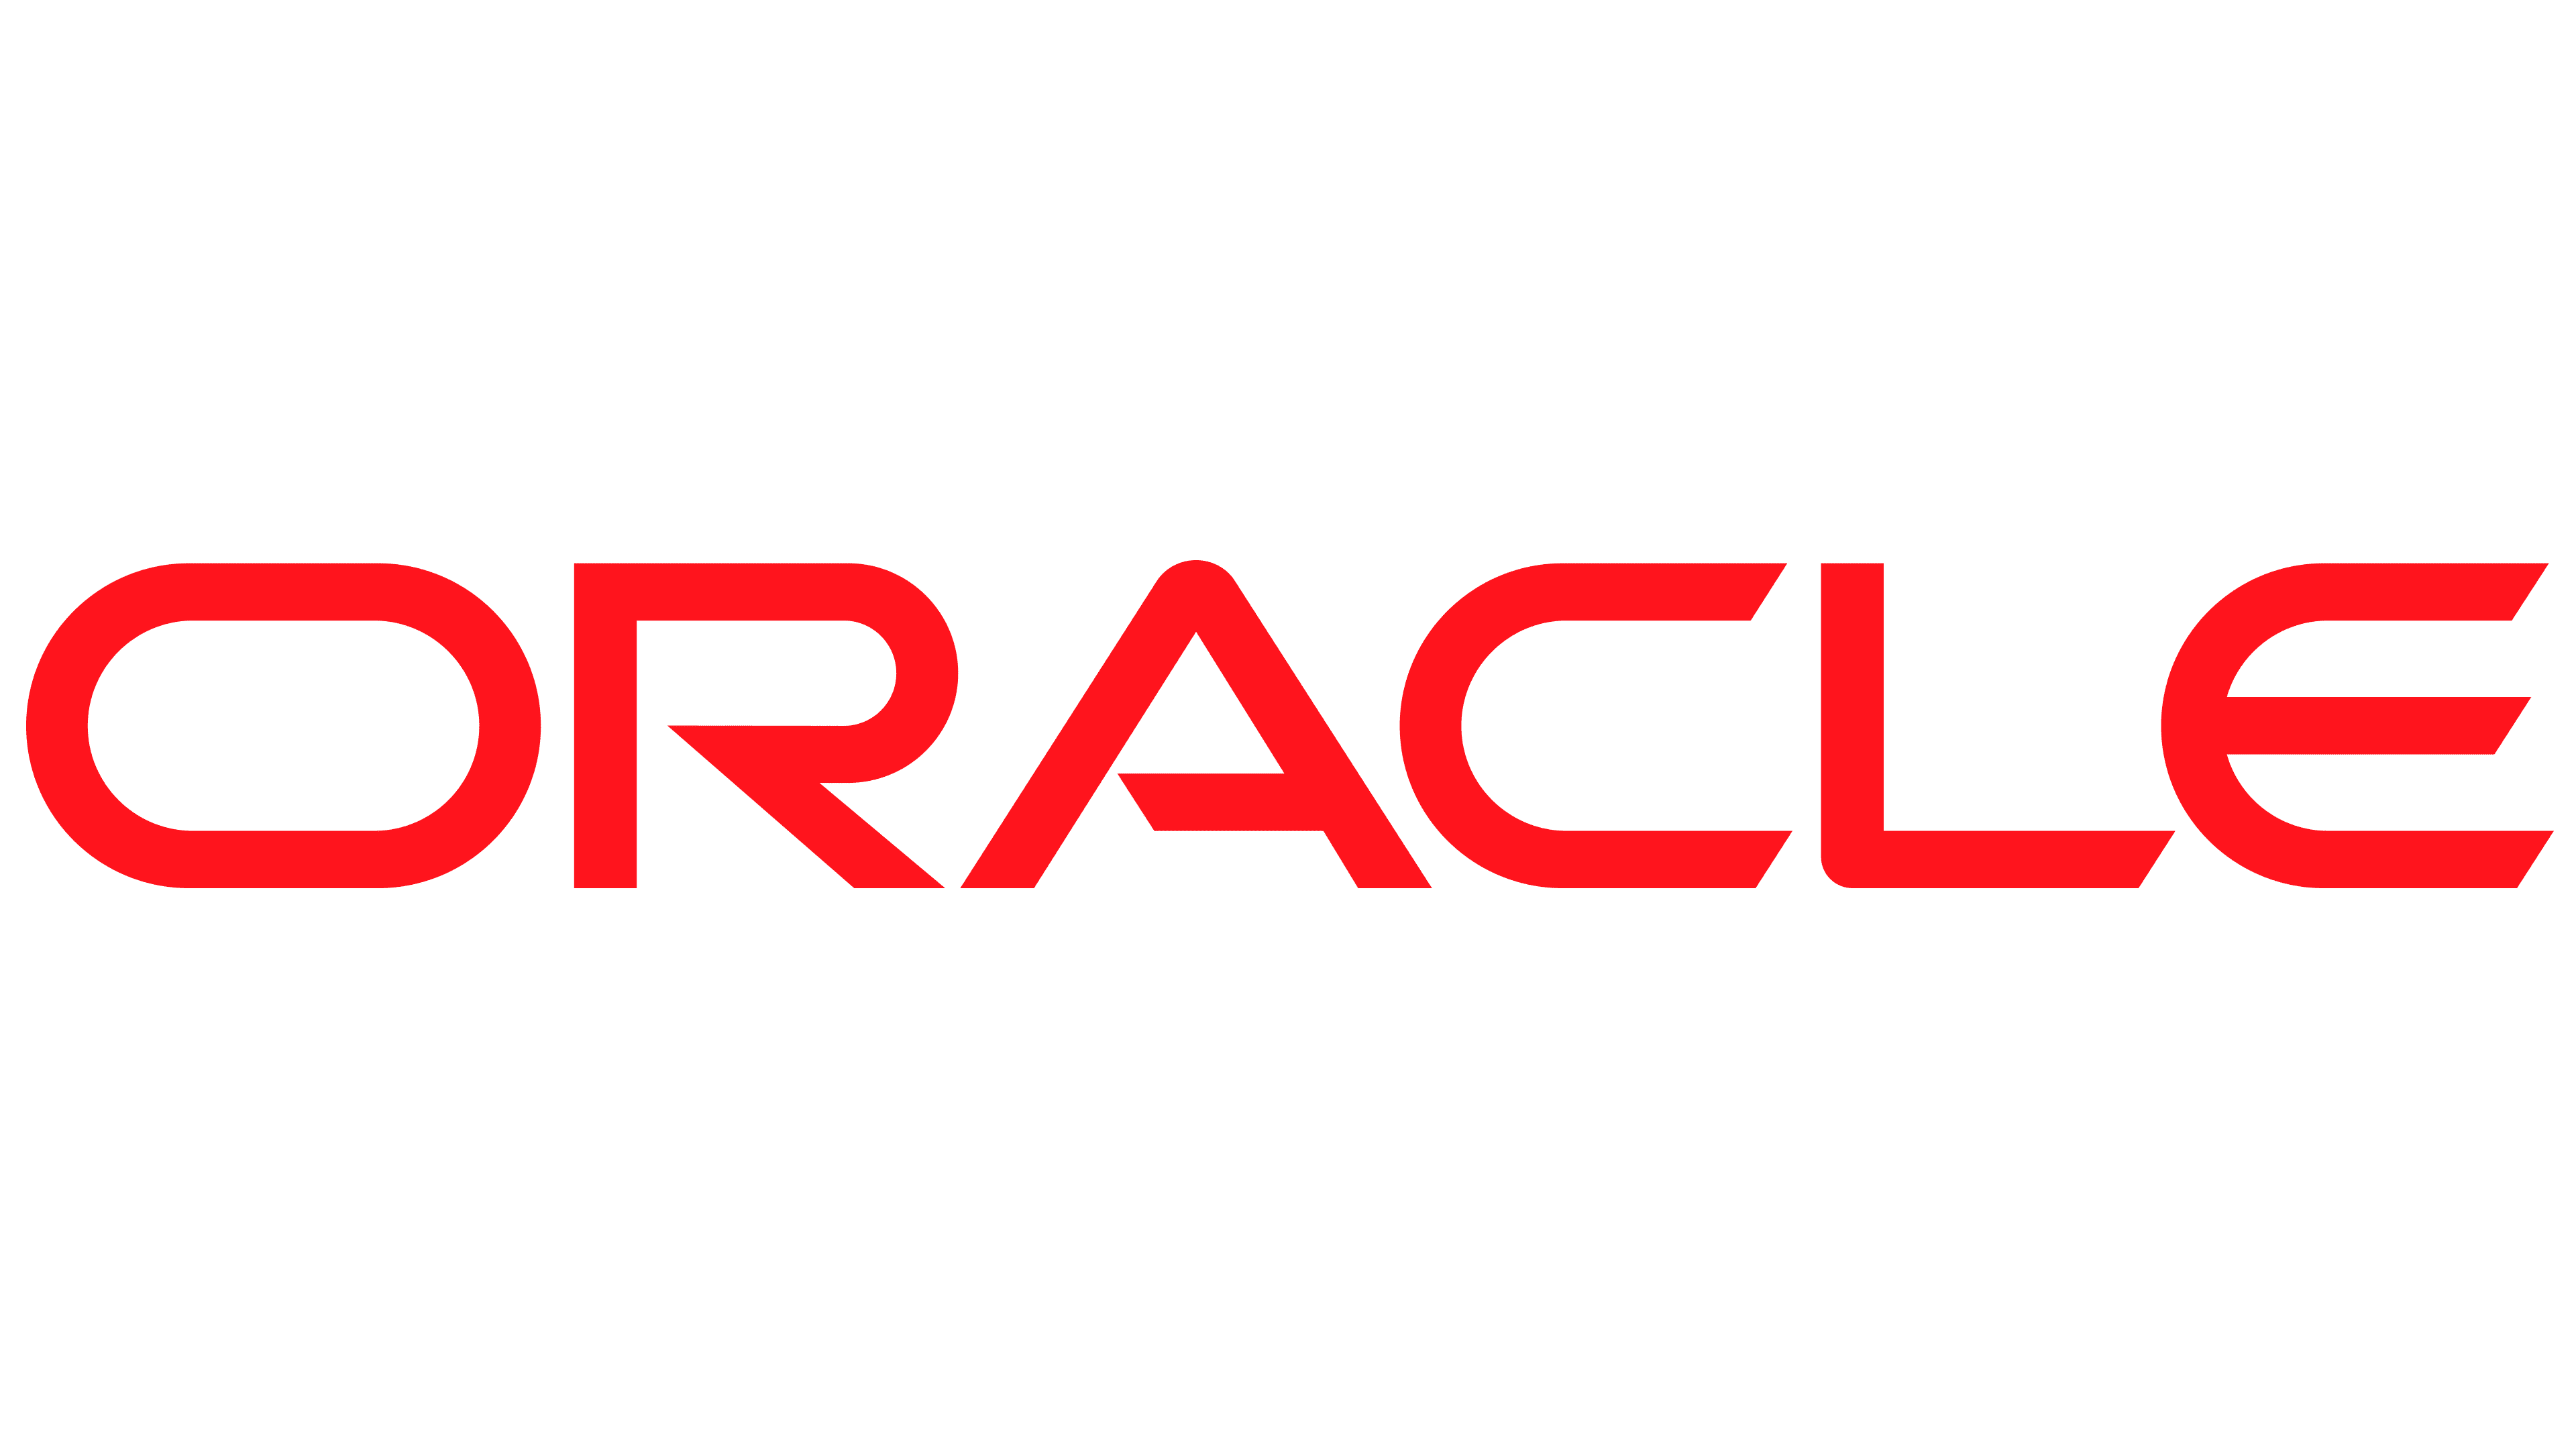 Oracle-Logo-PMG